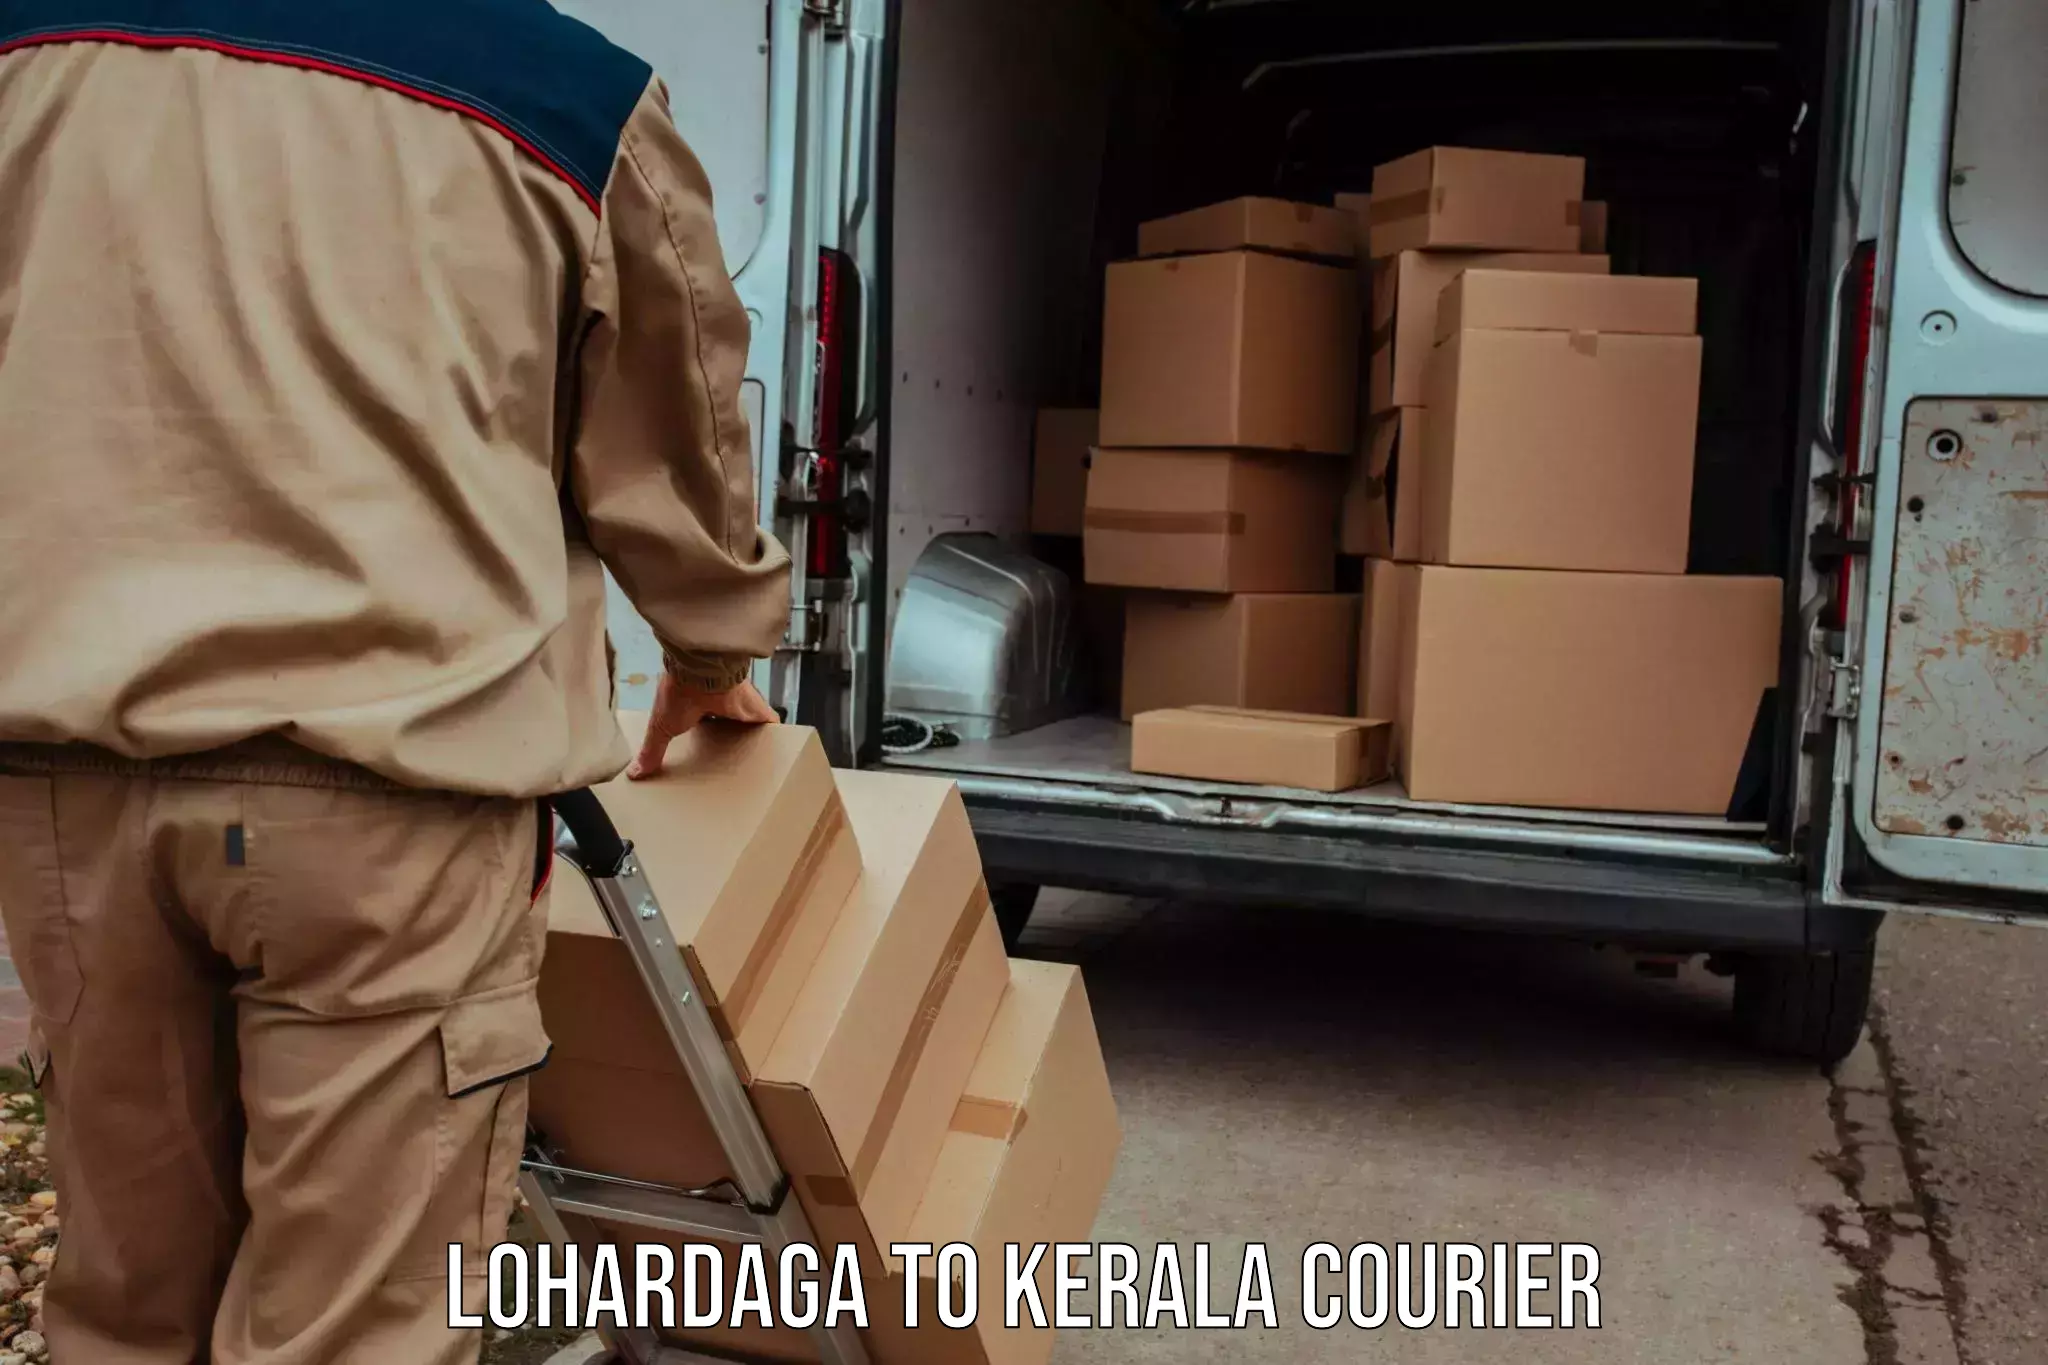 Nationwide parcel services Lohardaga to Kakkayam